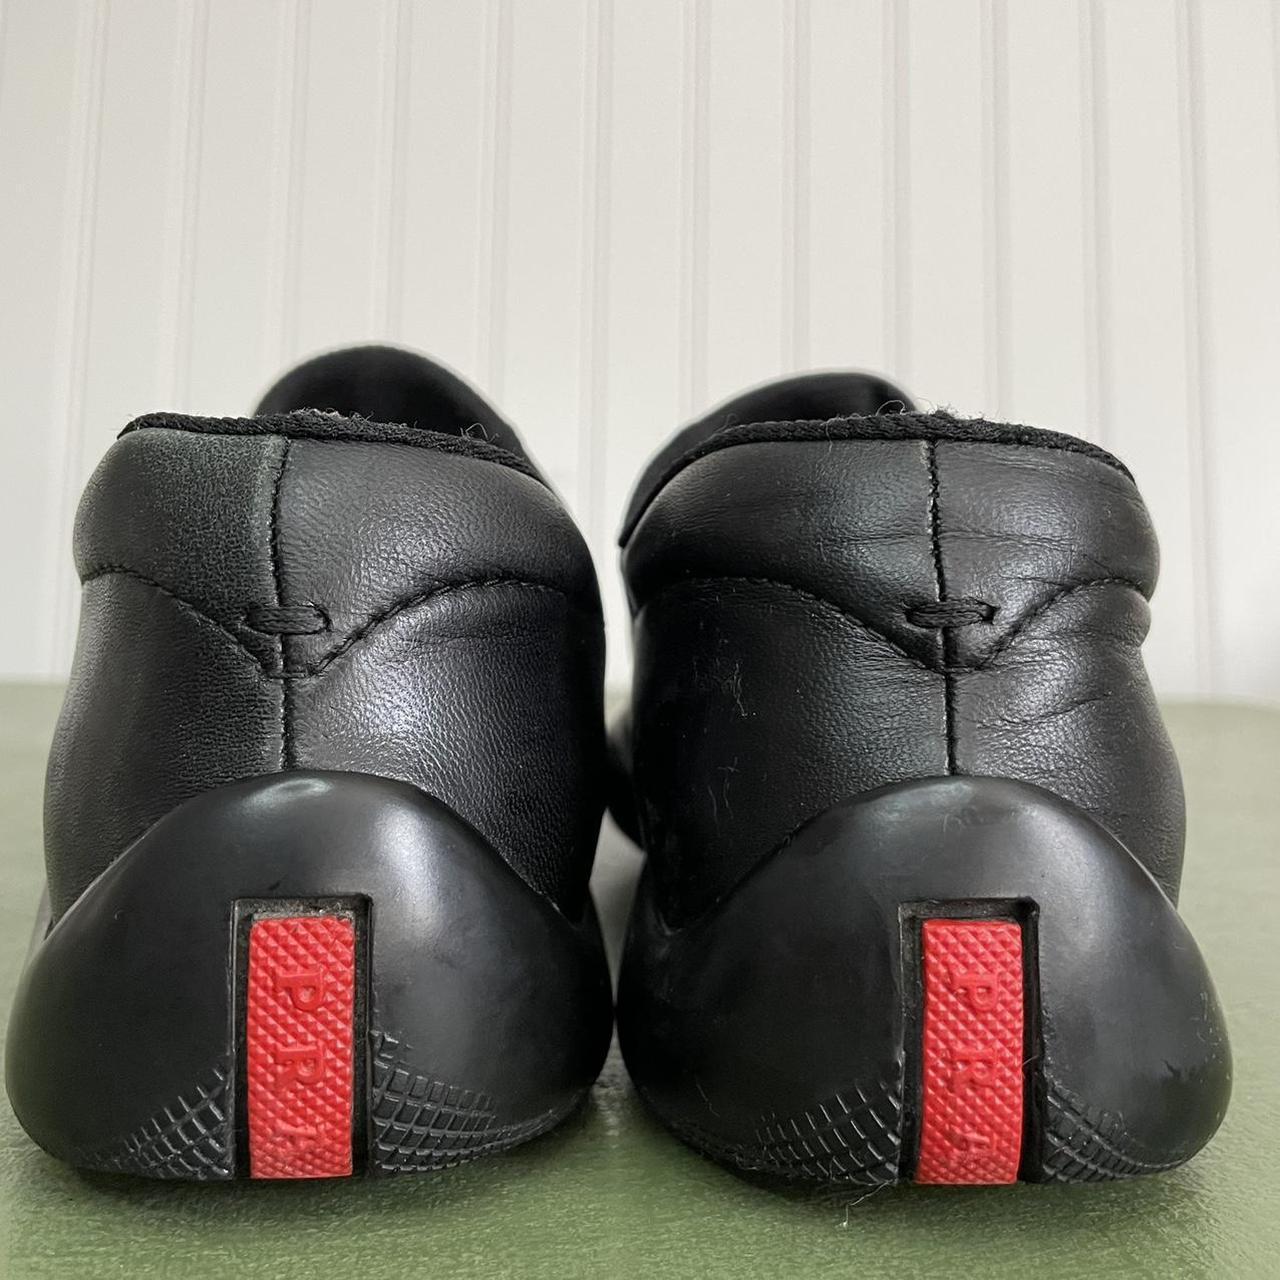 Prada Sleek Leather Sneakers/Casual Shoes w... - Depop